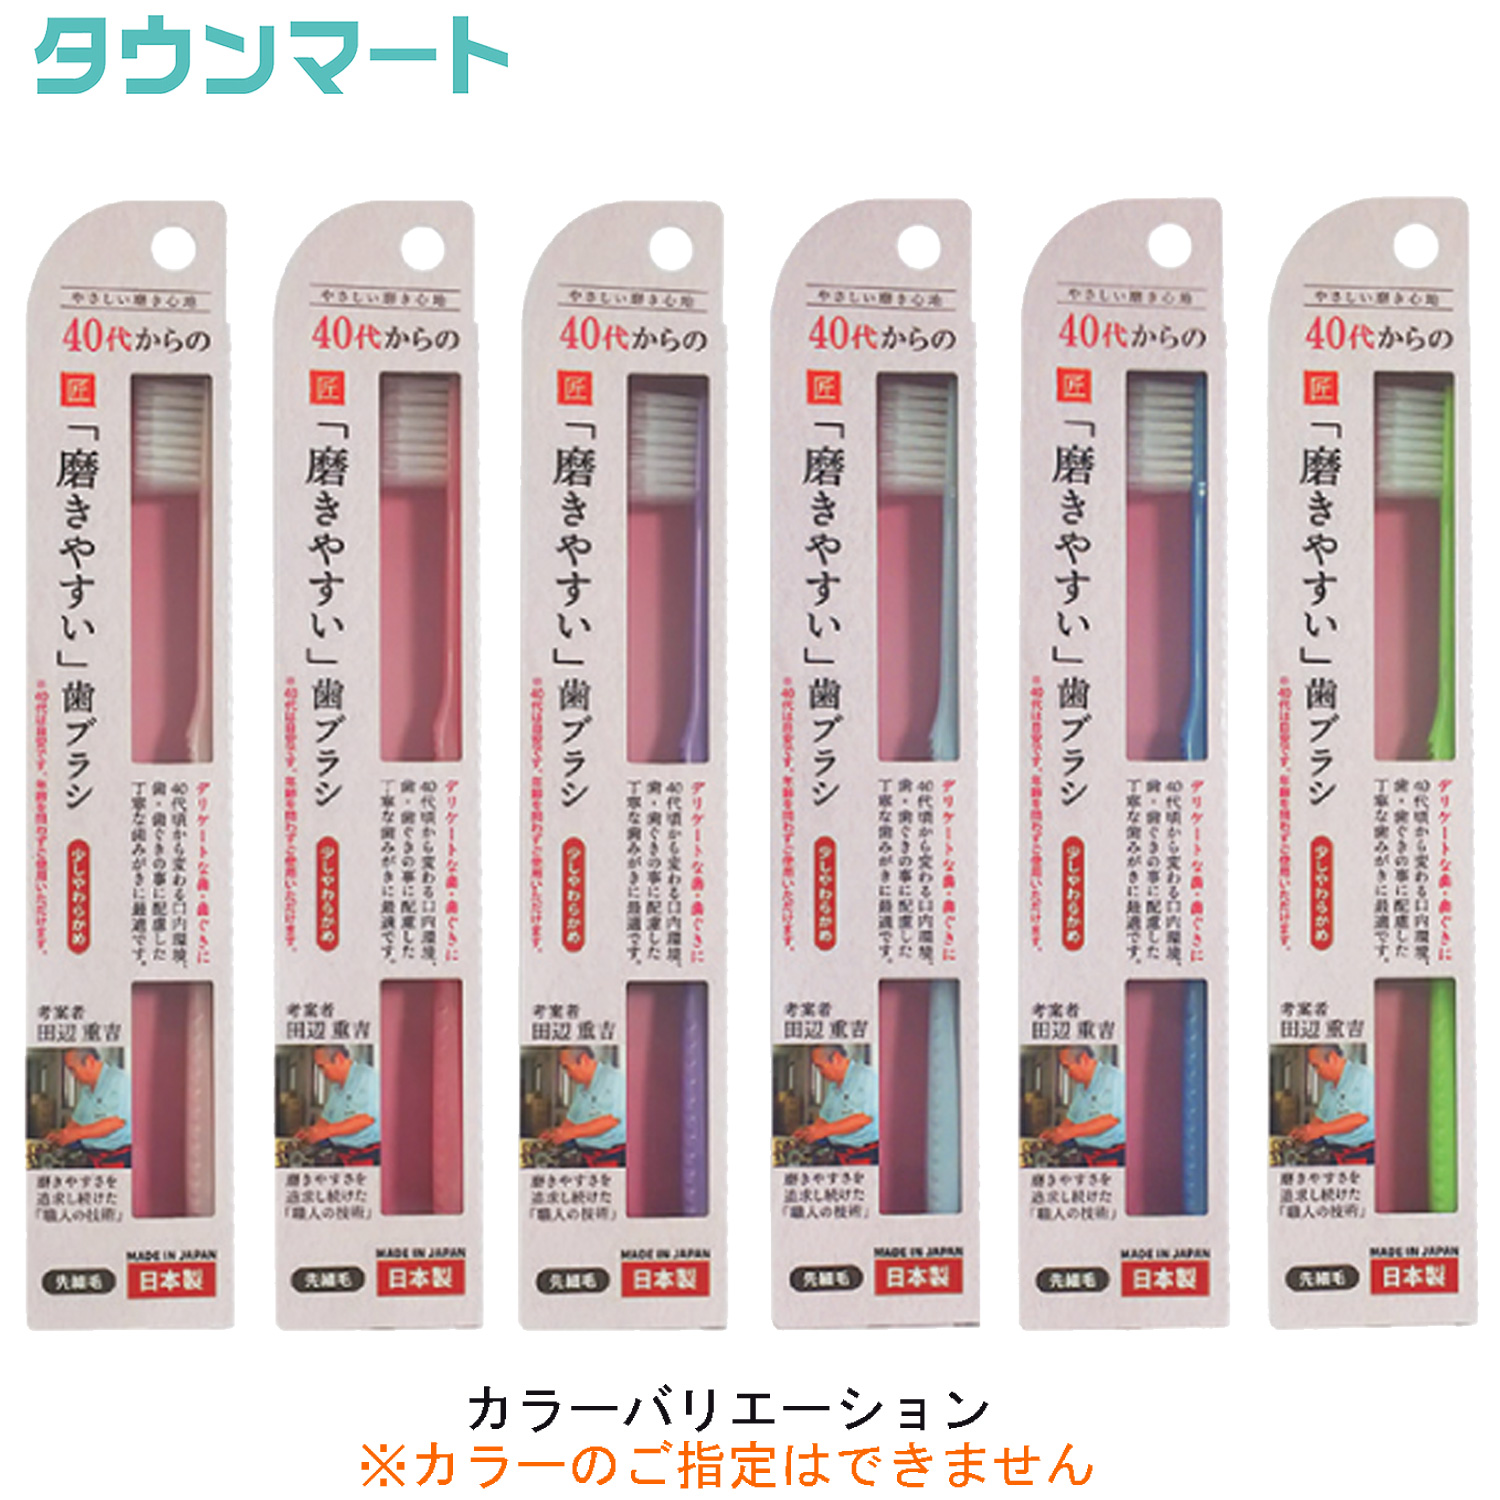 ◇高品質40代からの磨きやすい歯ブラシ LT-57 （アソートカラー）×12個 デンタルケア